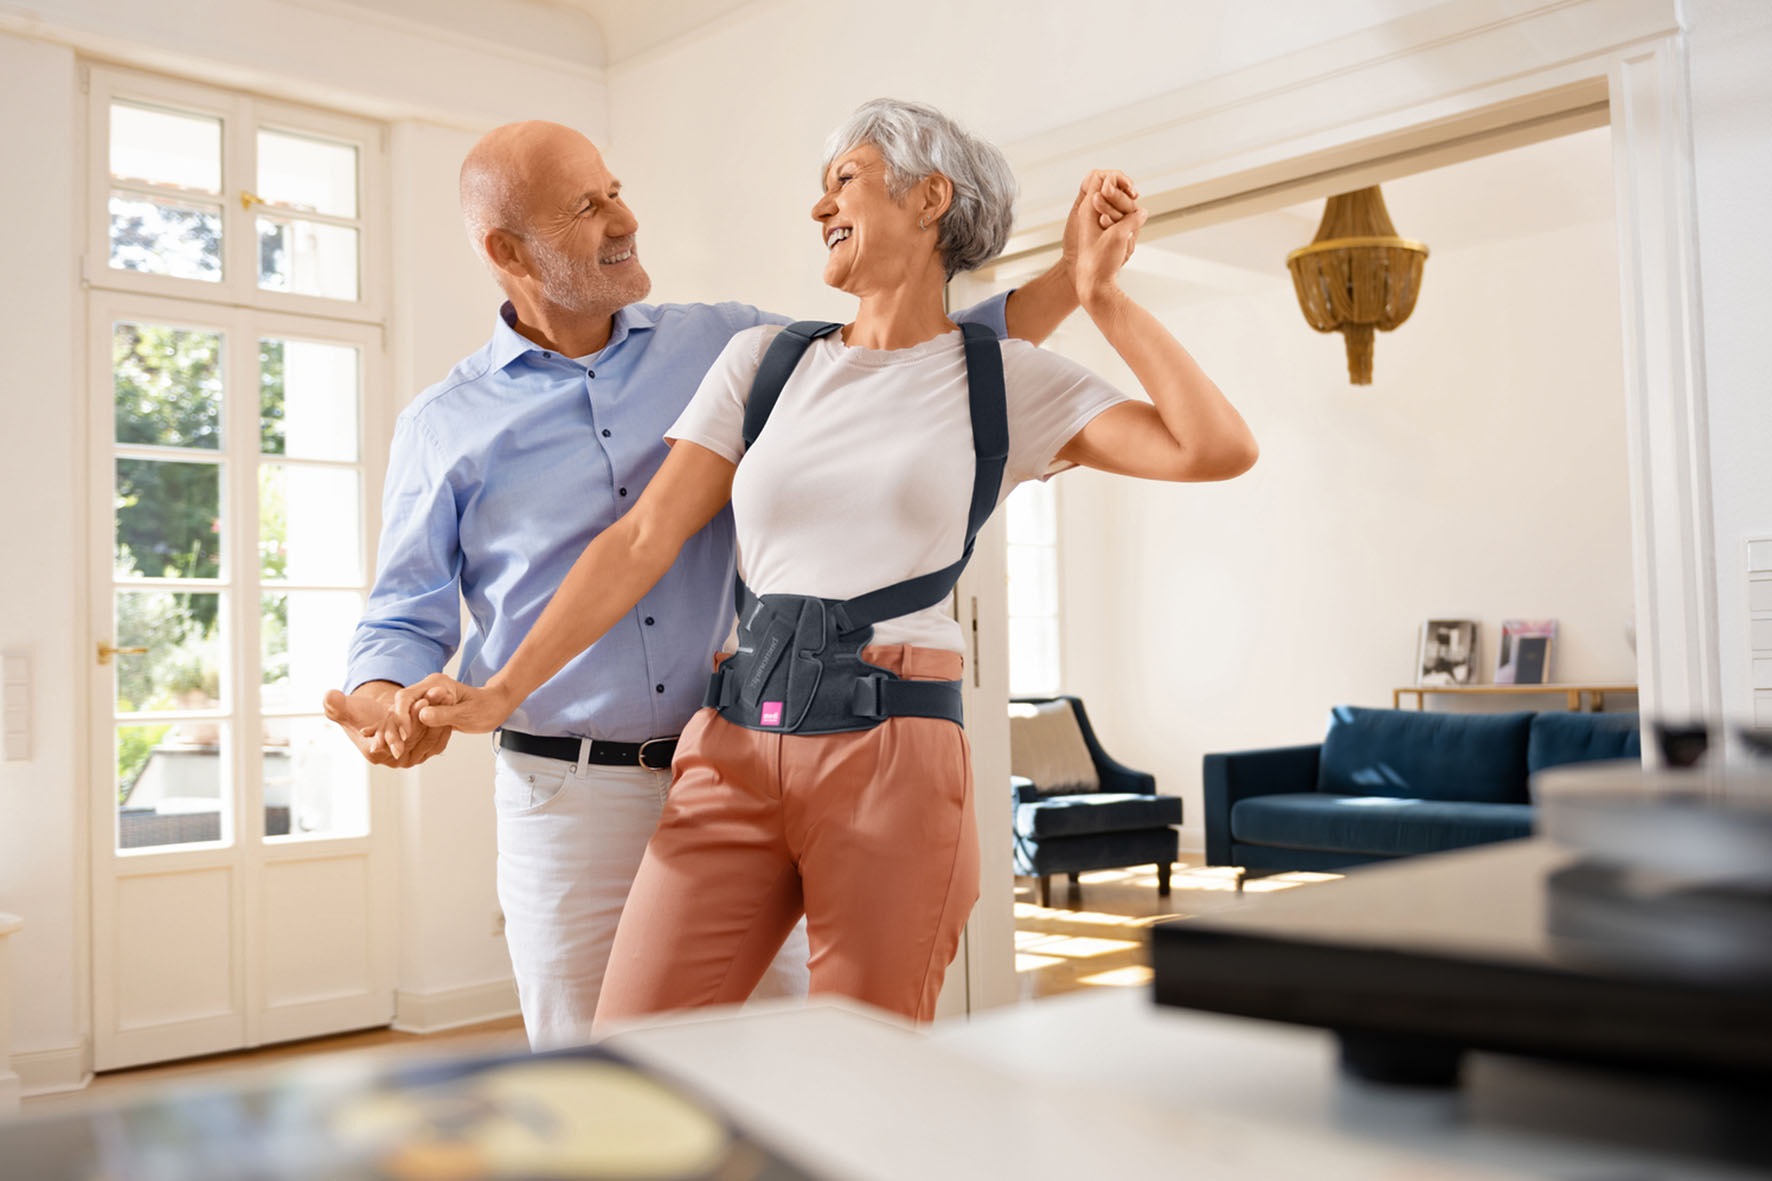 Frau mit Osteoporose tanzt mit ihrem Partner